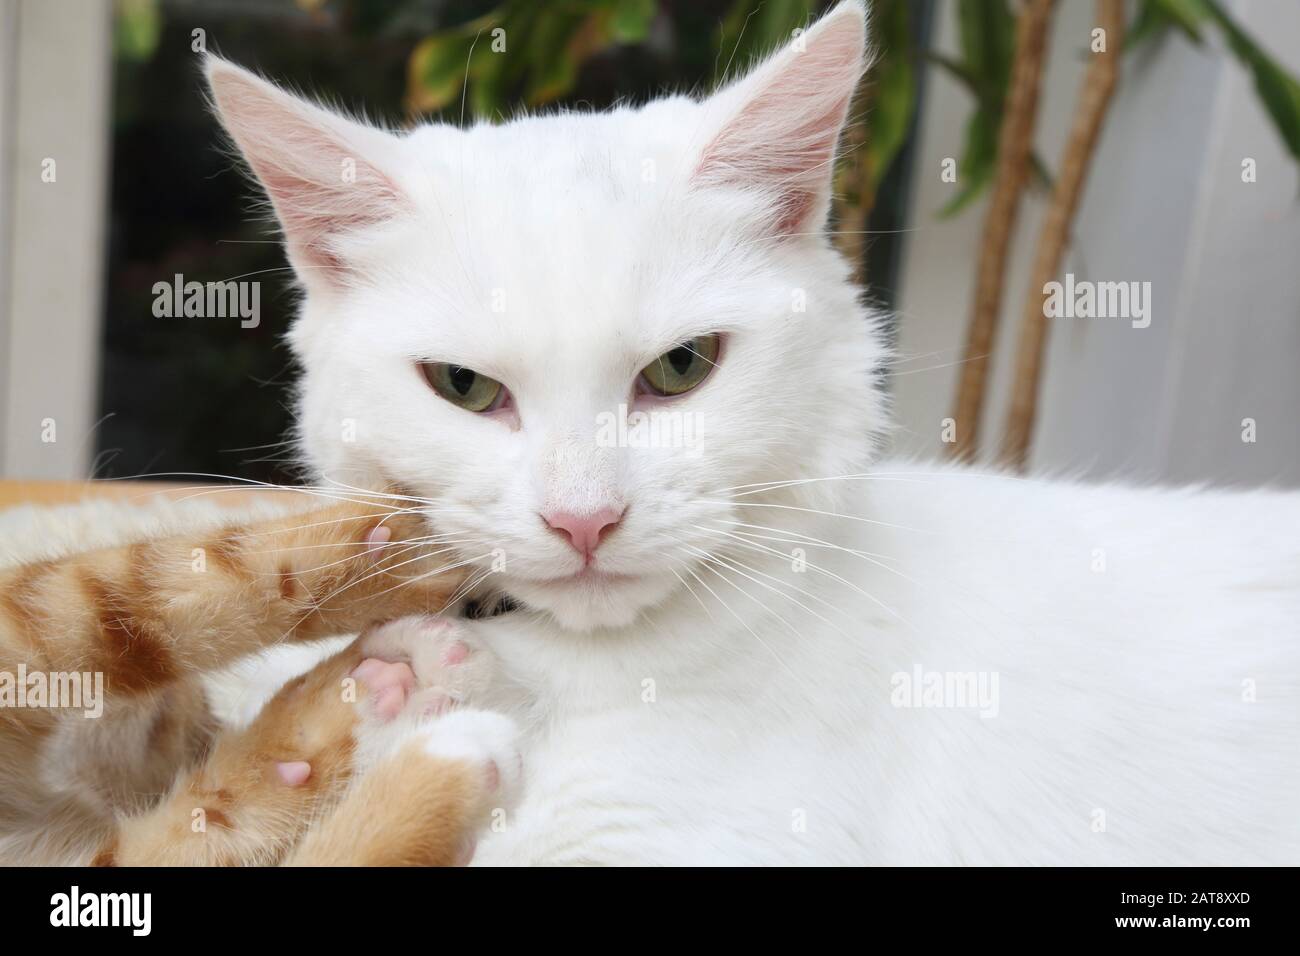 Ginger Kitten and White Turkish Angora Cat Play Fighting Stock Photo